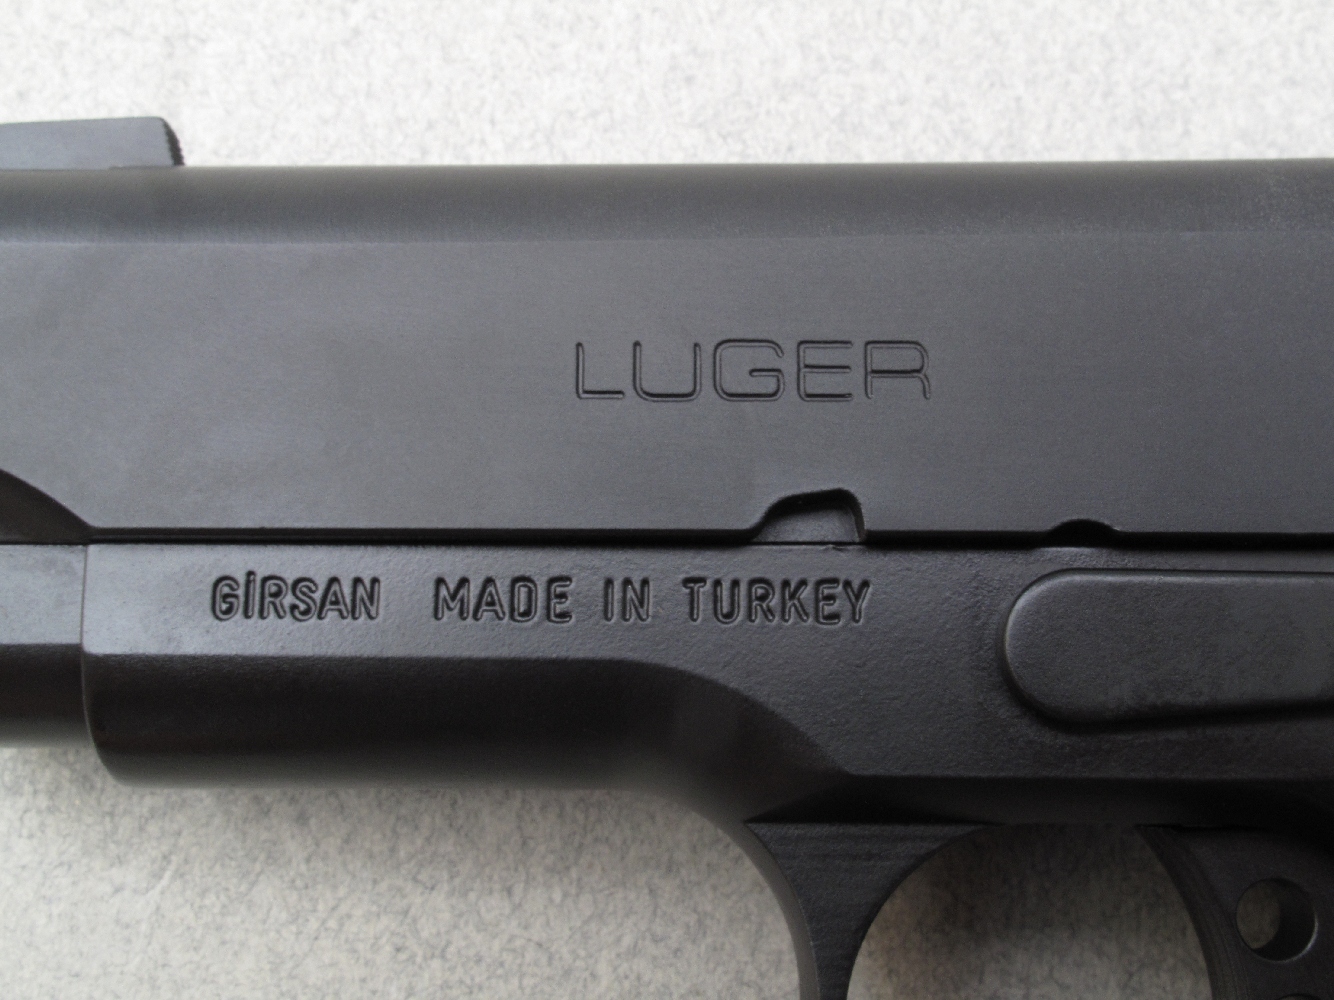 La glissière s’orne de la prestigieuse marque « Luger », mais les inscriptions portées sur la carcasse indiquent sans équivoque que cette arme est fabriquée en Turquie par la firme Girsan.